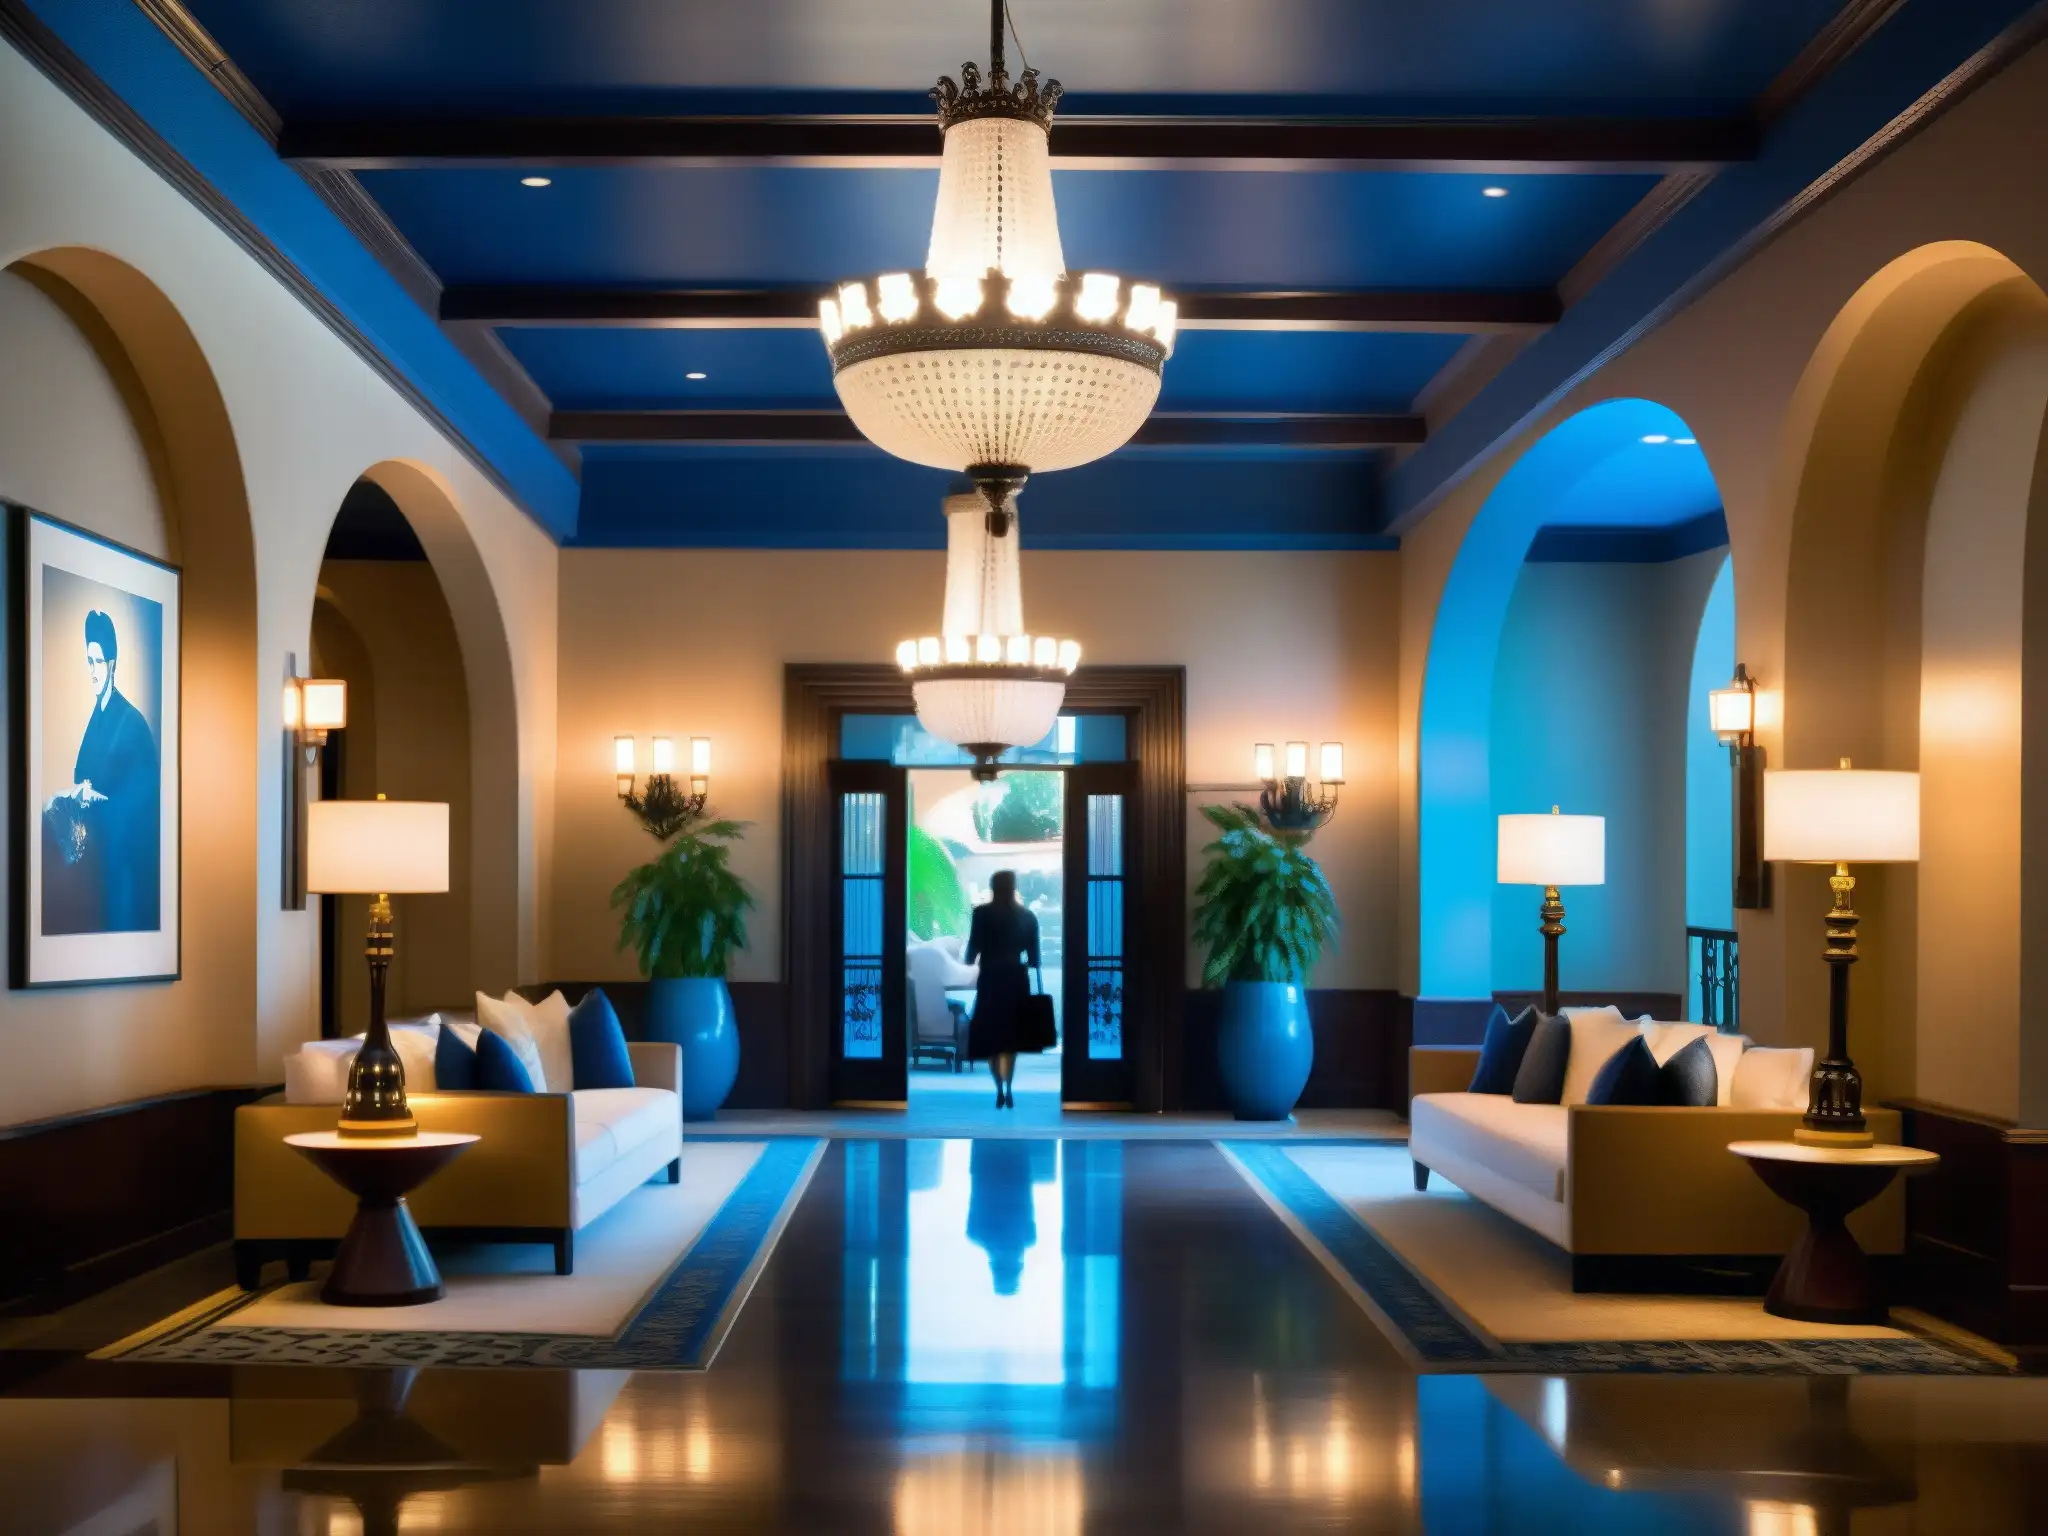 Interior del Hotel Hollywood Roosevelt con misteriosa dama azul, elegantes detalles y ambiente histórico